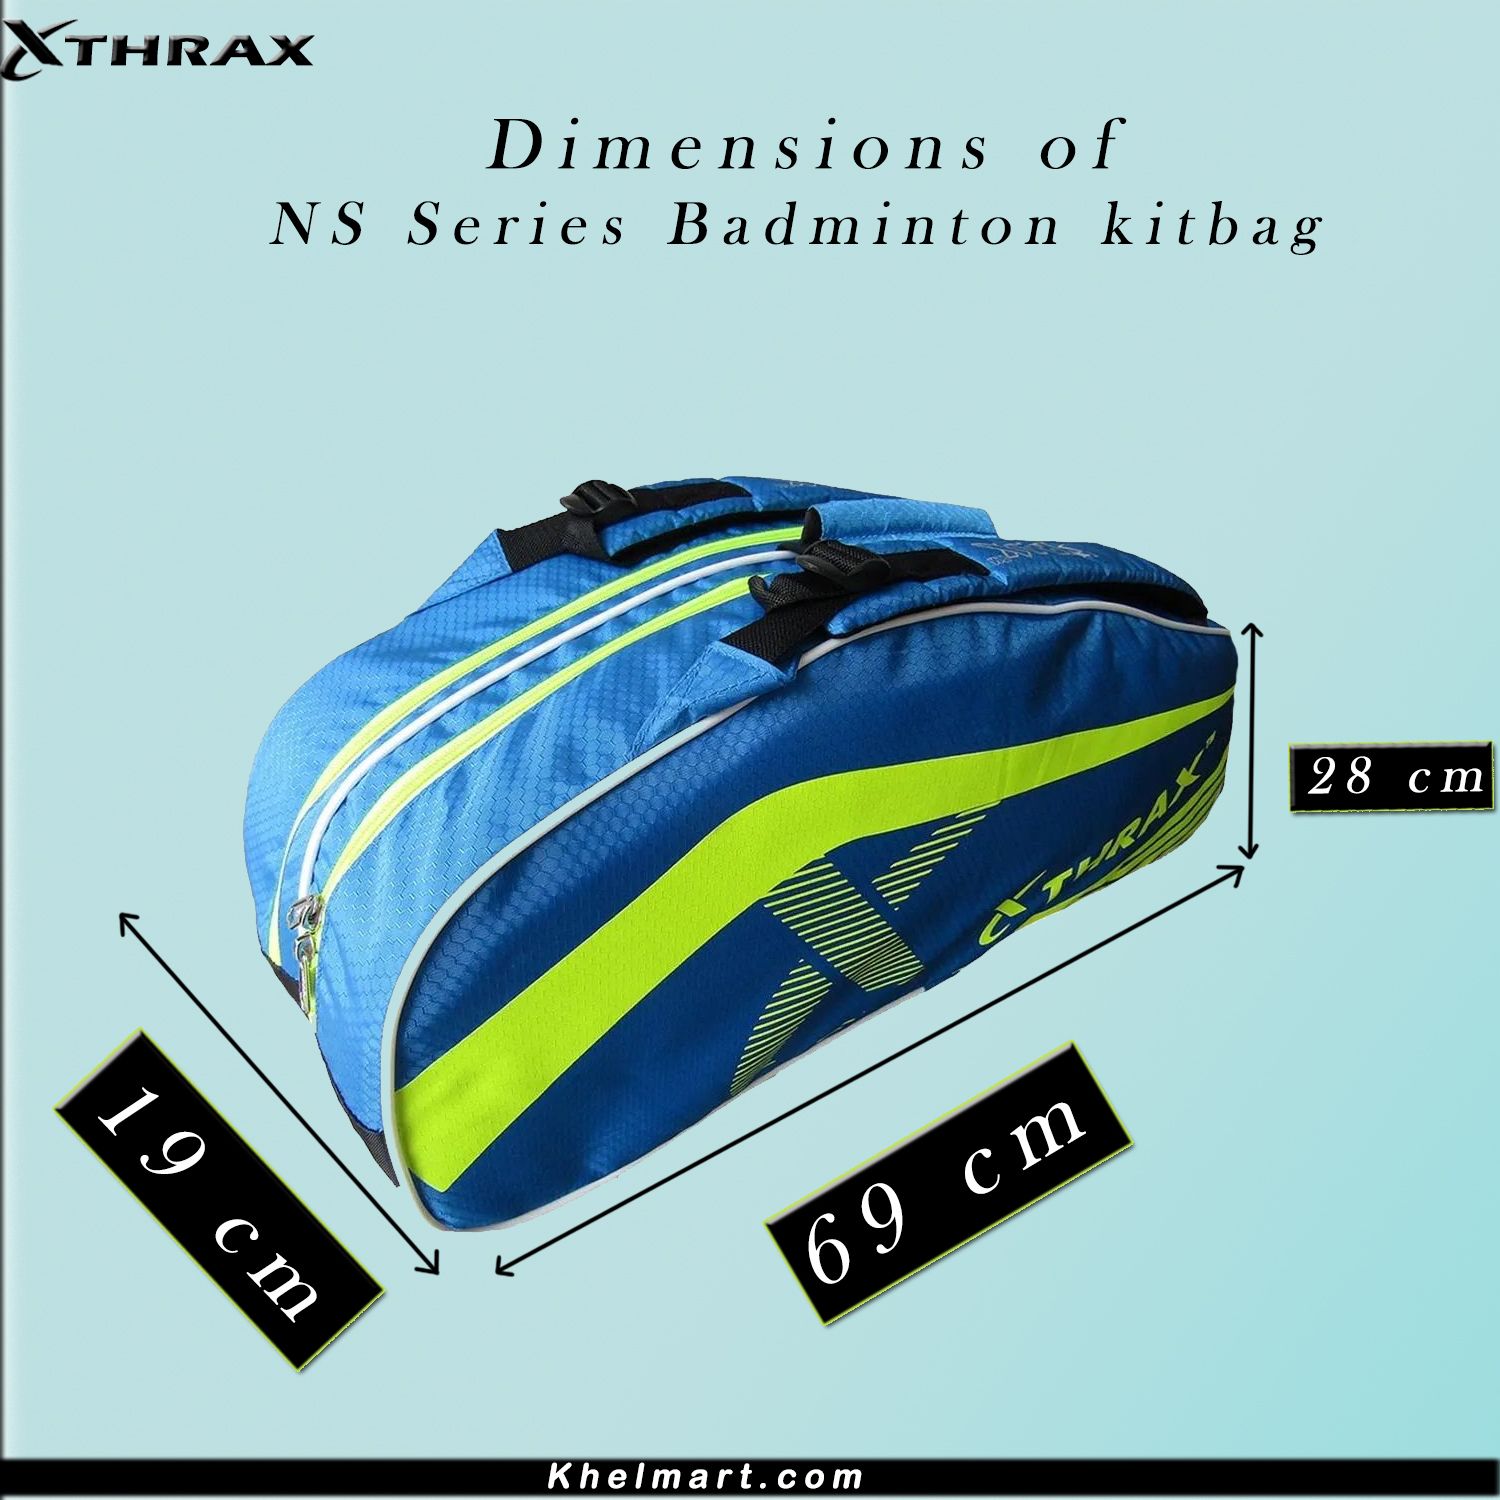 Thrax NS Series Badminton Kit Bag Sky Blue And Lime